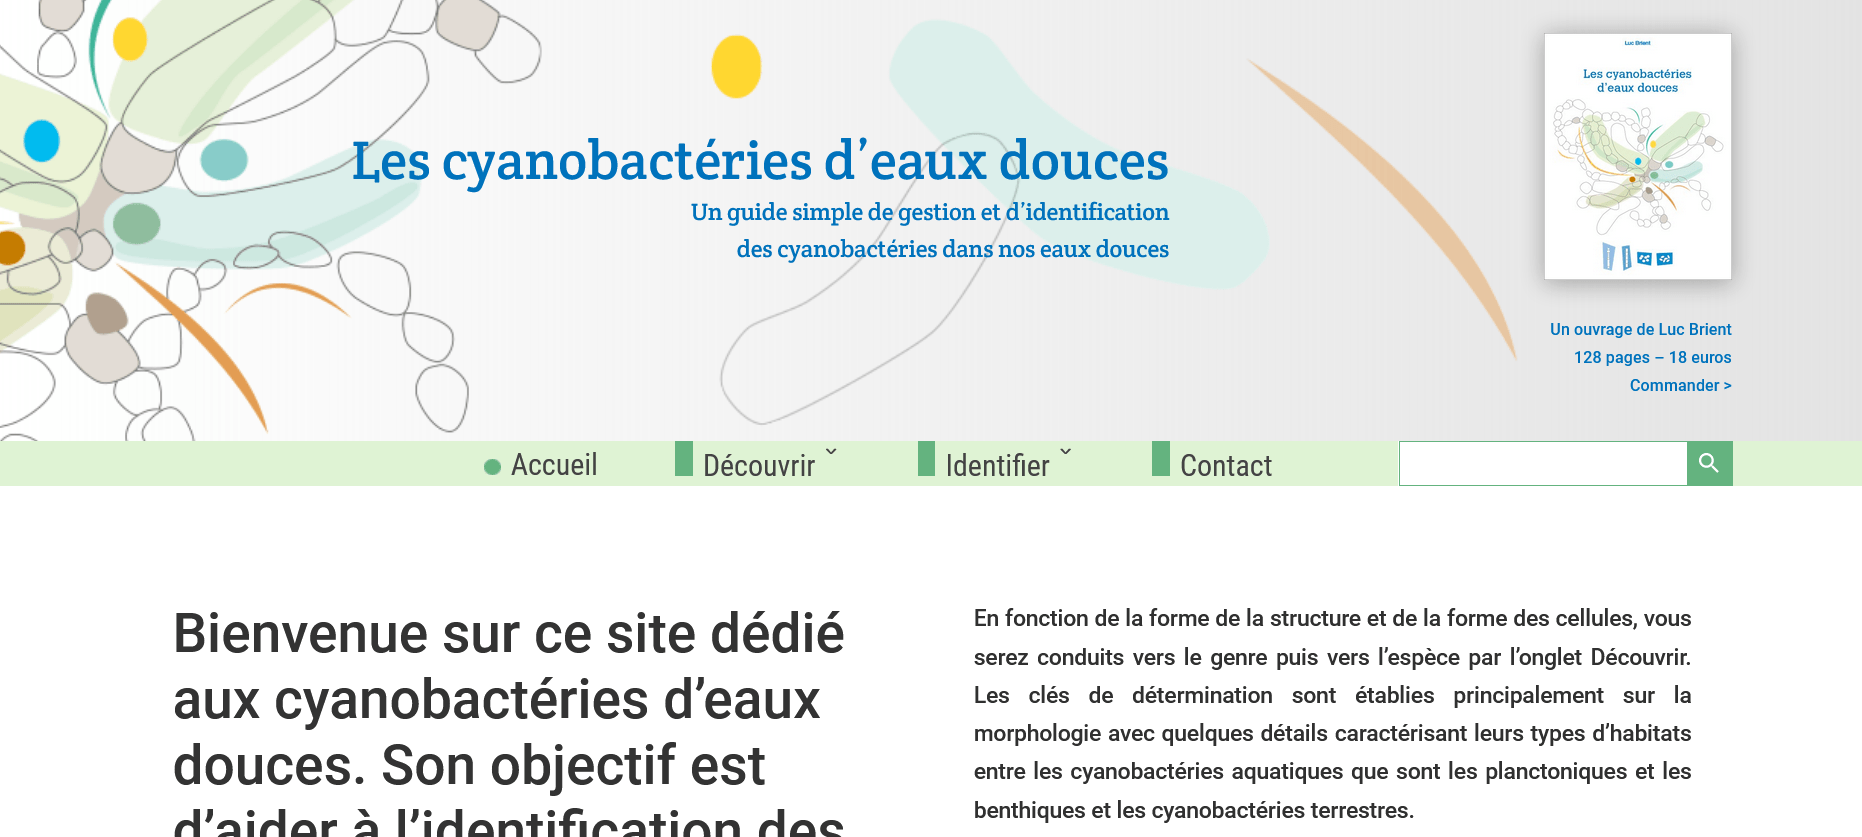 Accueil - Les cyanobactéries d'eaux douces